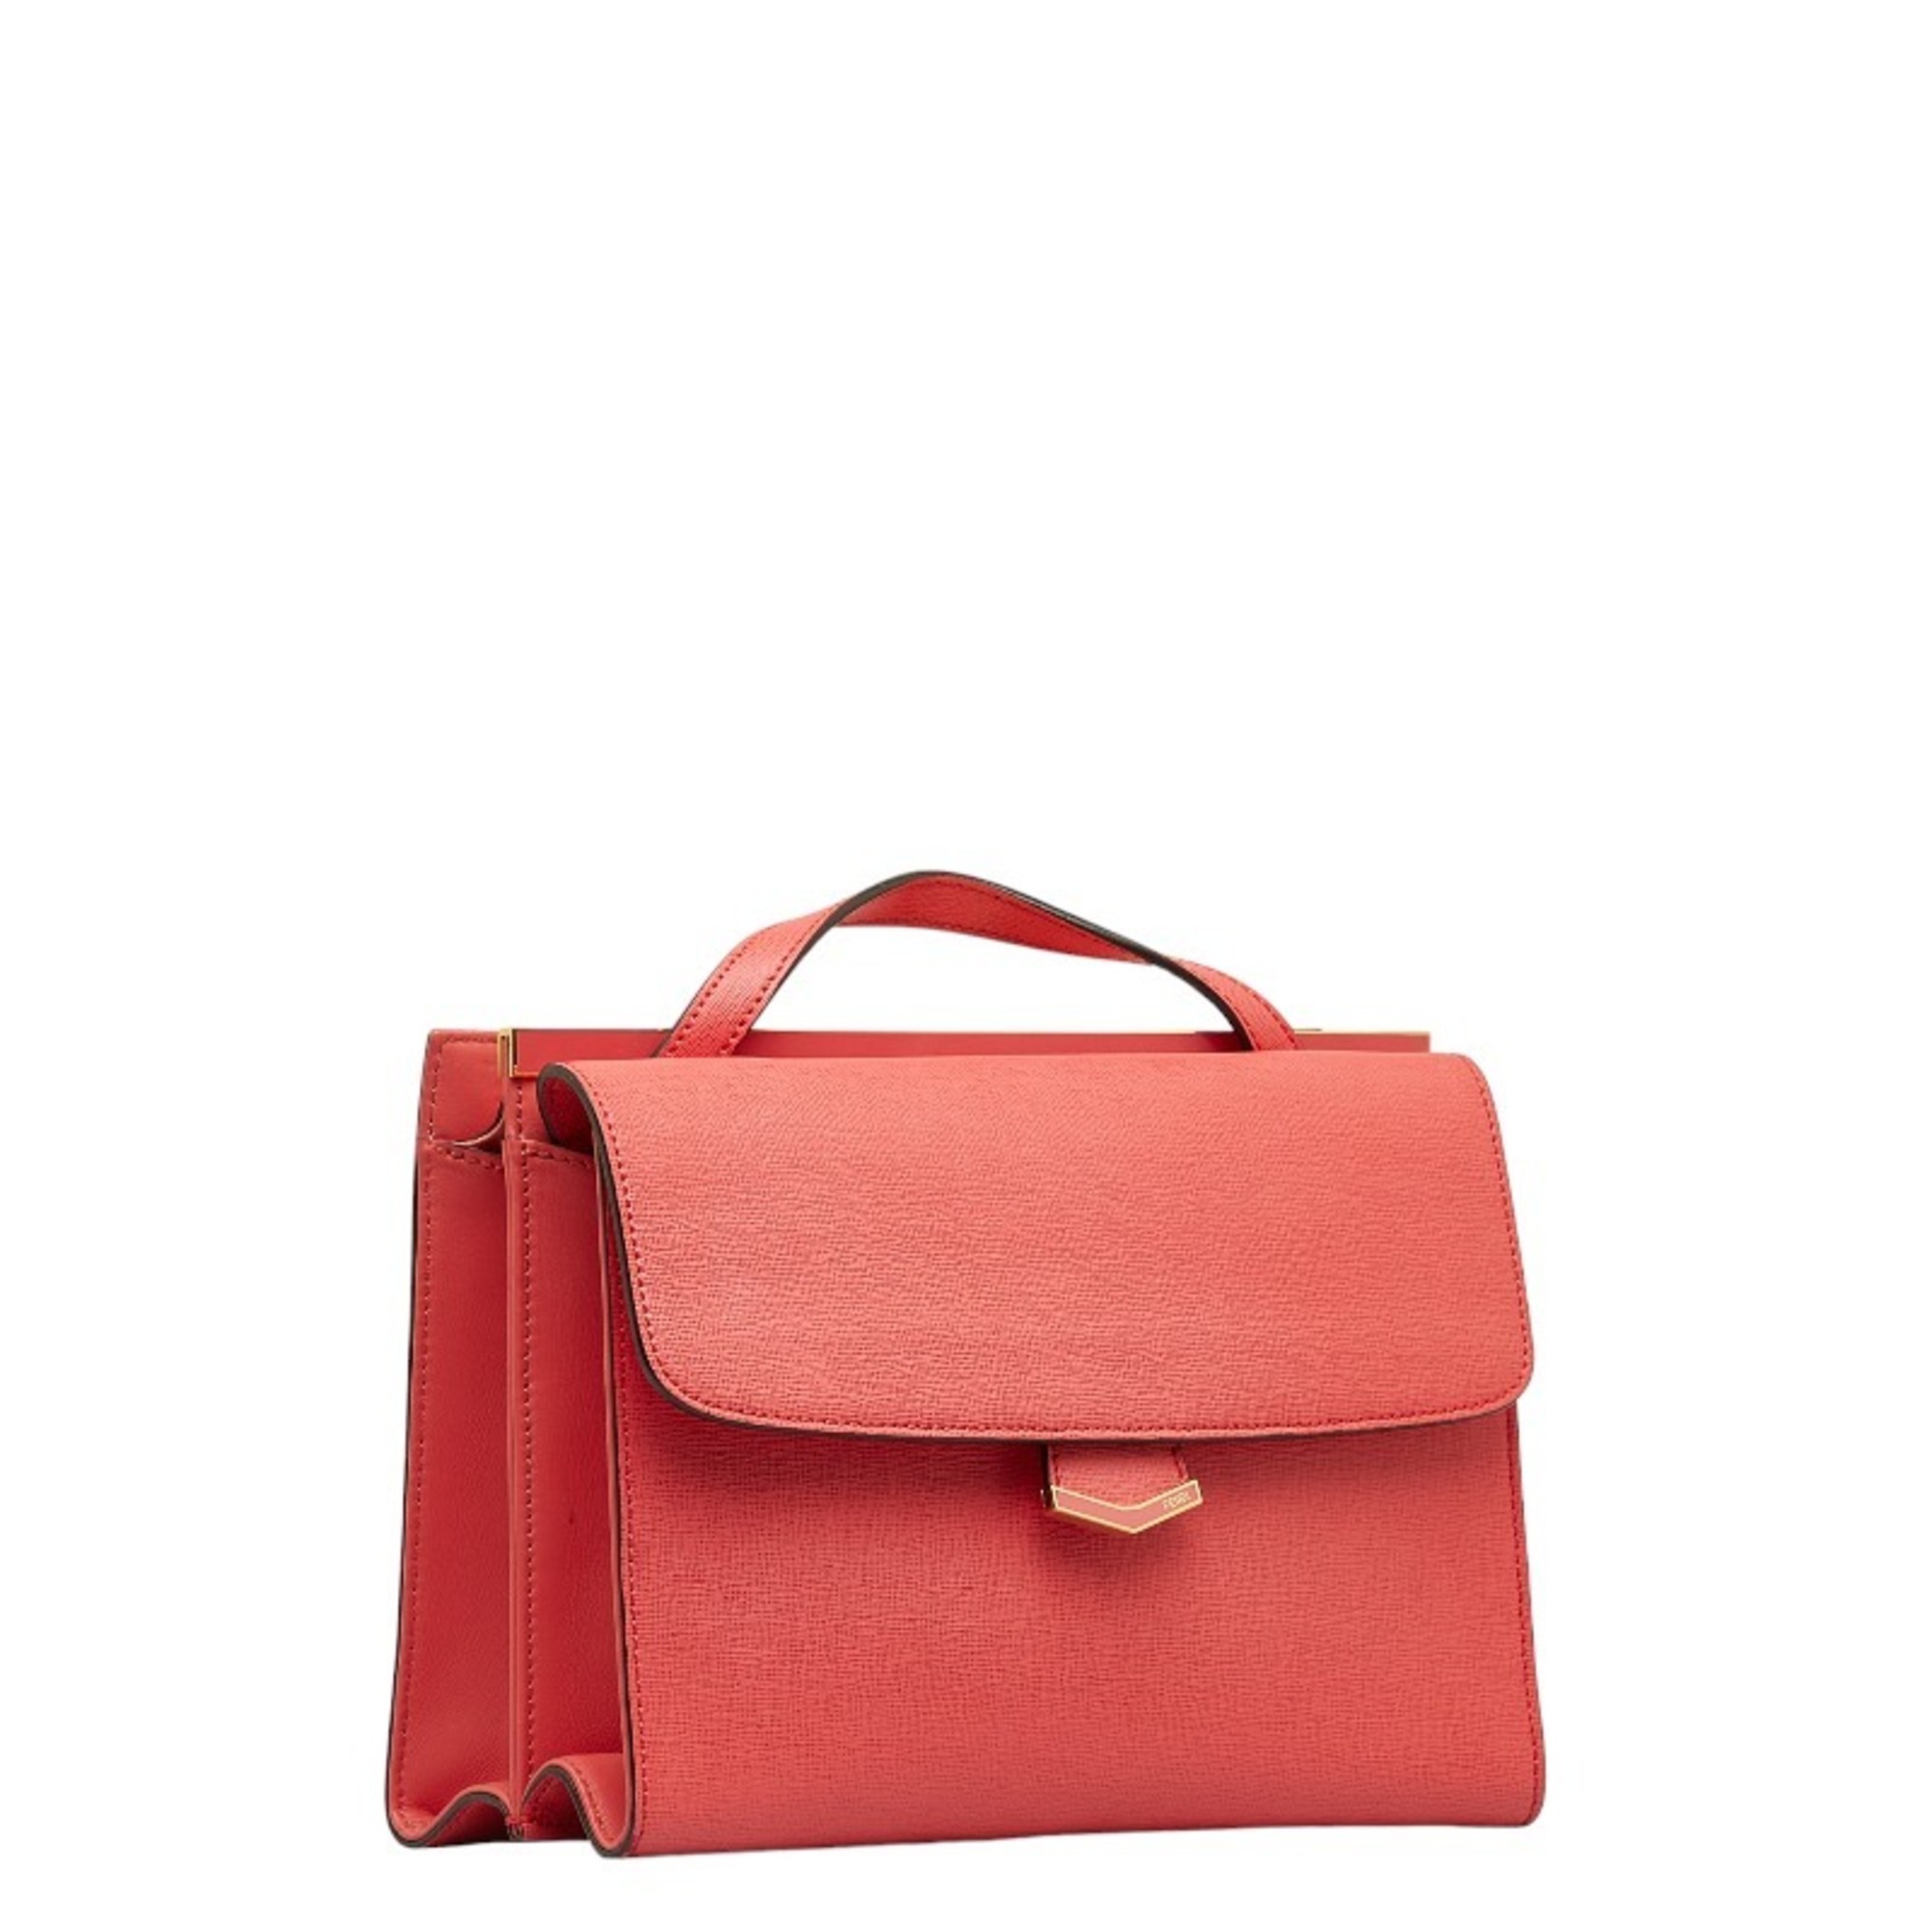 FENDI handbag shoulder bag pink leather ladies